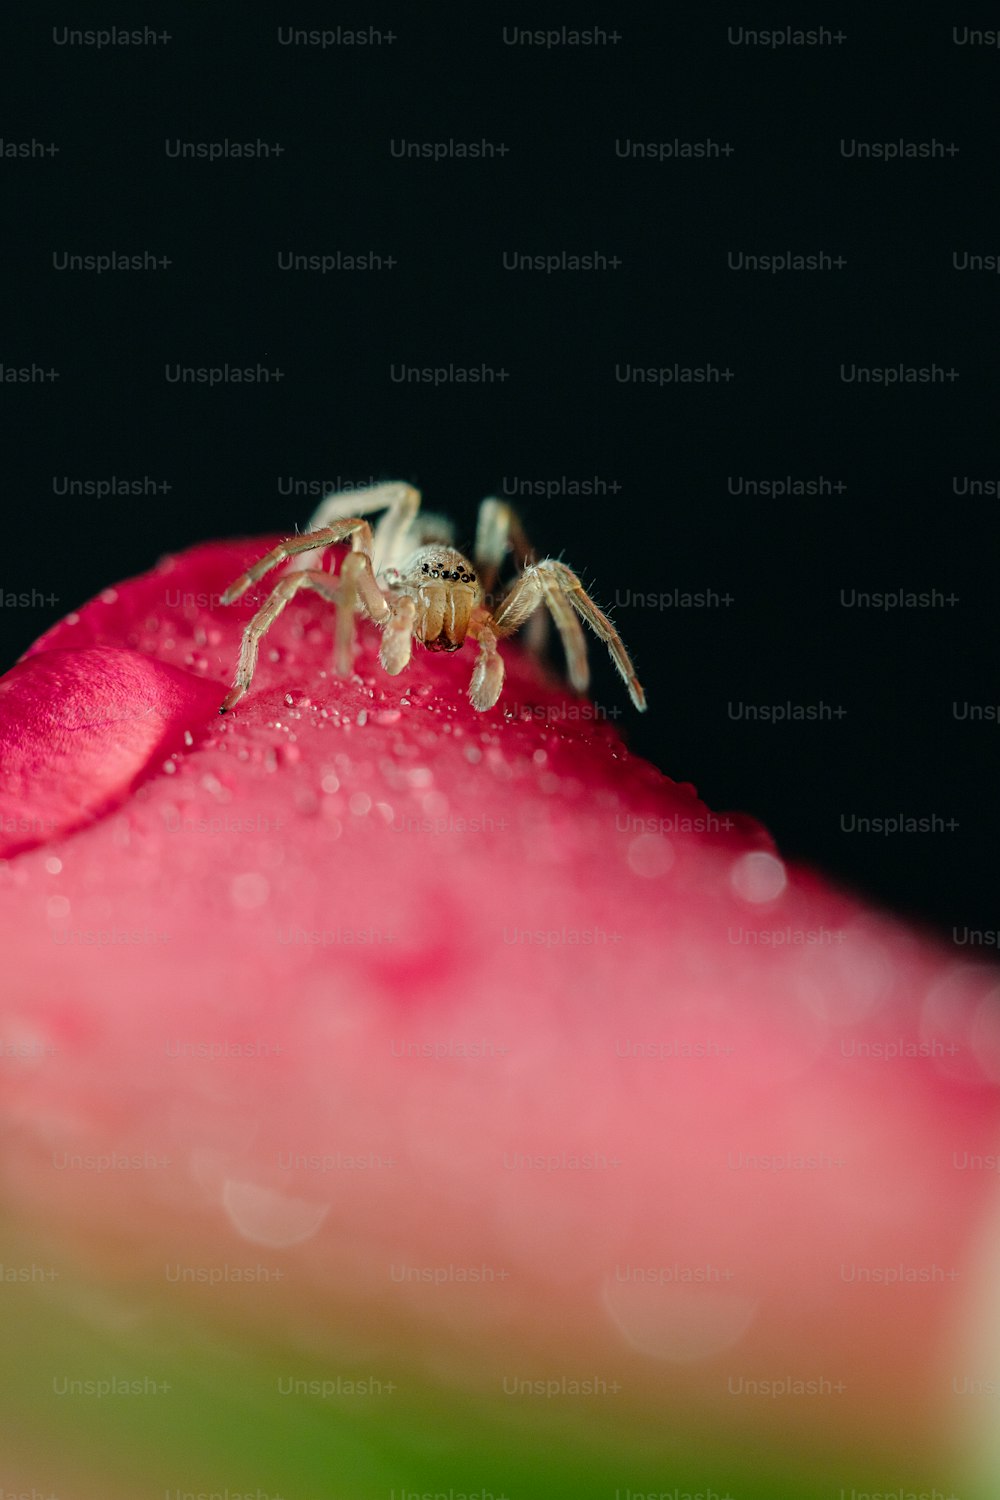 Eine Spinne sitzt auf einer rosa Blume